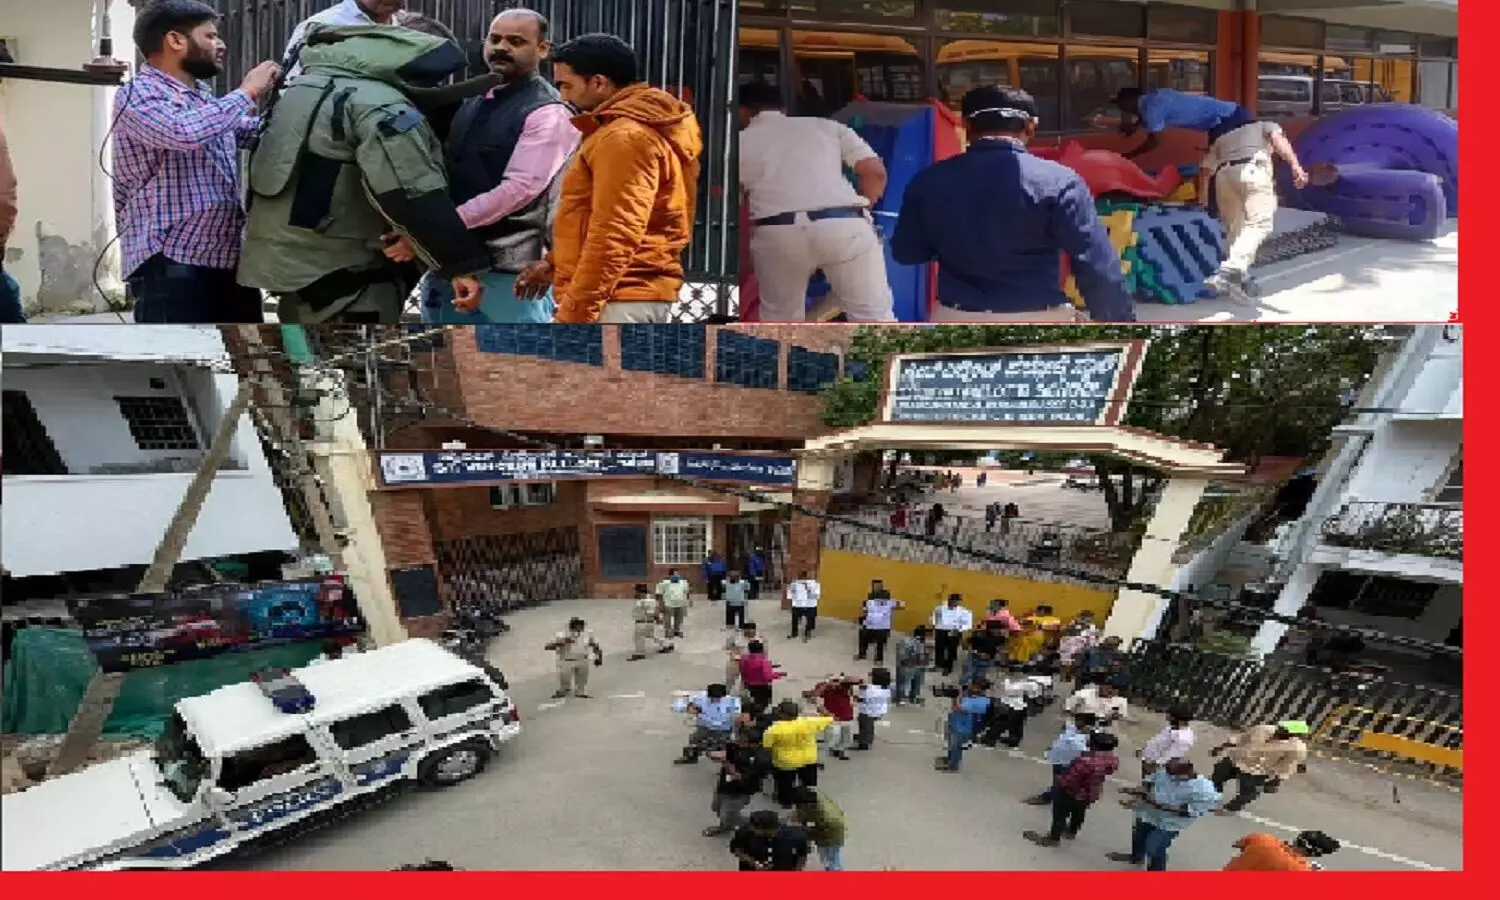 बेंगलुरू:स्कूलों को बम से उड़ाने की धमकी, बम स्क्वाड ने बच्चों को बाहर निकाल सर्चिंग की पर कुछ नहीं मिला